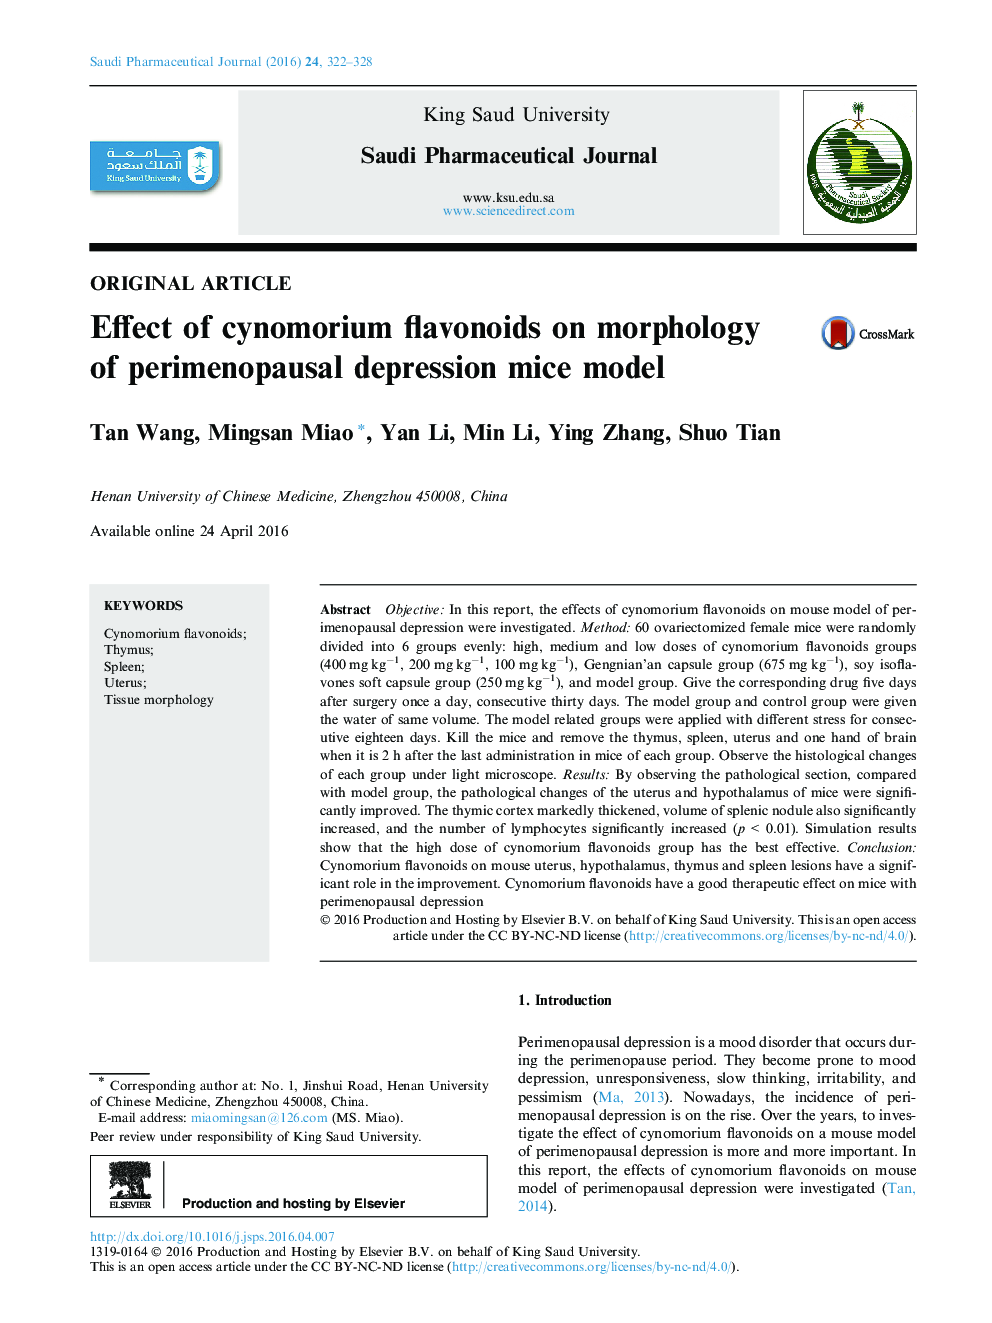 تأثیر فلاونوئیدهای سینوموریوم بر مورفولوژی مدل موشهای افسردگی غشایی 